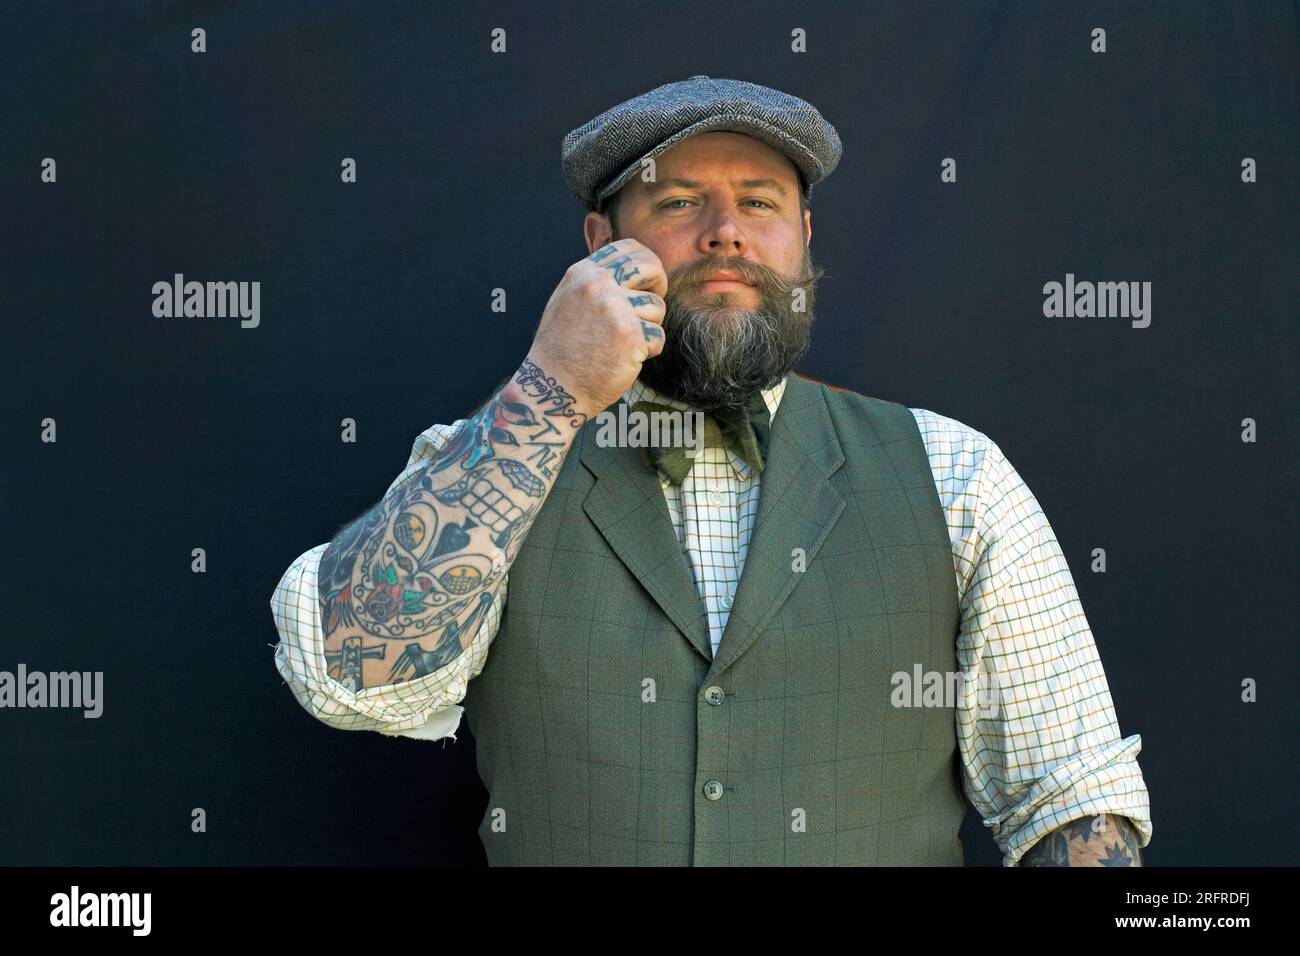 El hombre barbudo está girando su bigote con sus dedos. Retrato de un hipster sobre fondo negro close up masculino con tatuajes en su brazo. Foto de stock